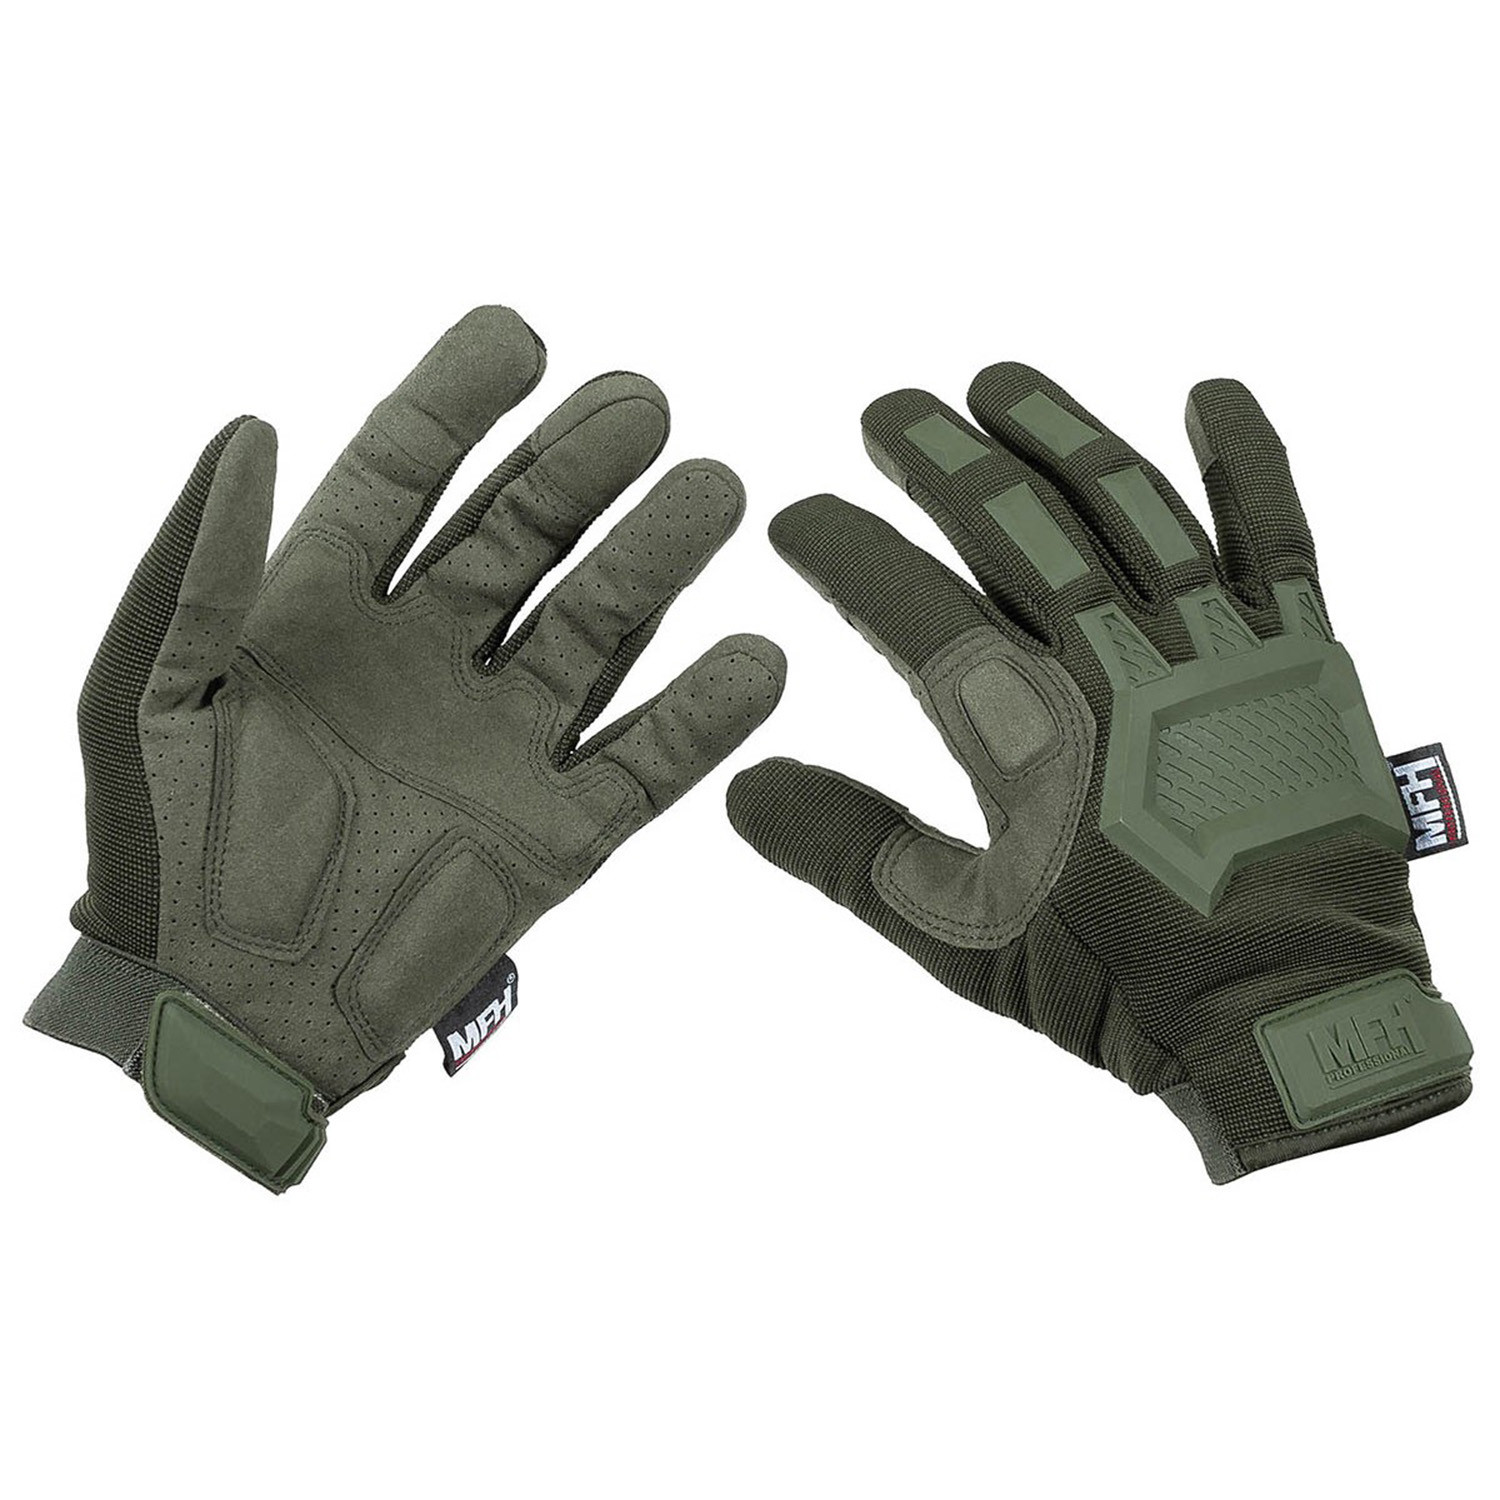 Taktische Handschuhe in Oliv, Größe S (7)